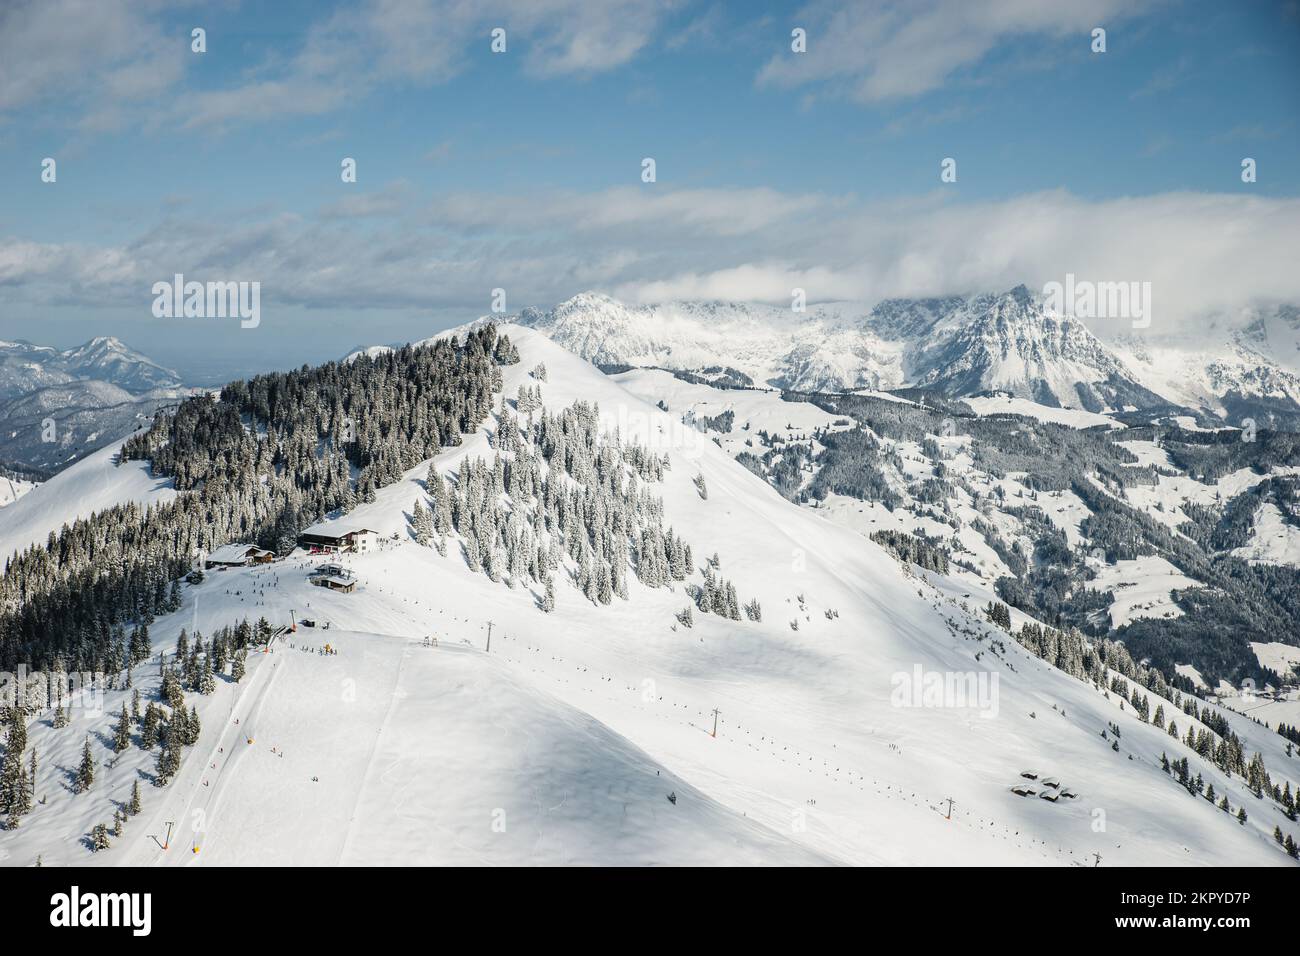 Aerial view of snowcapped mountain landscape, ski slope and ski lift, Kitzbuhel, Tyrol, Austria Stock Photo